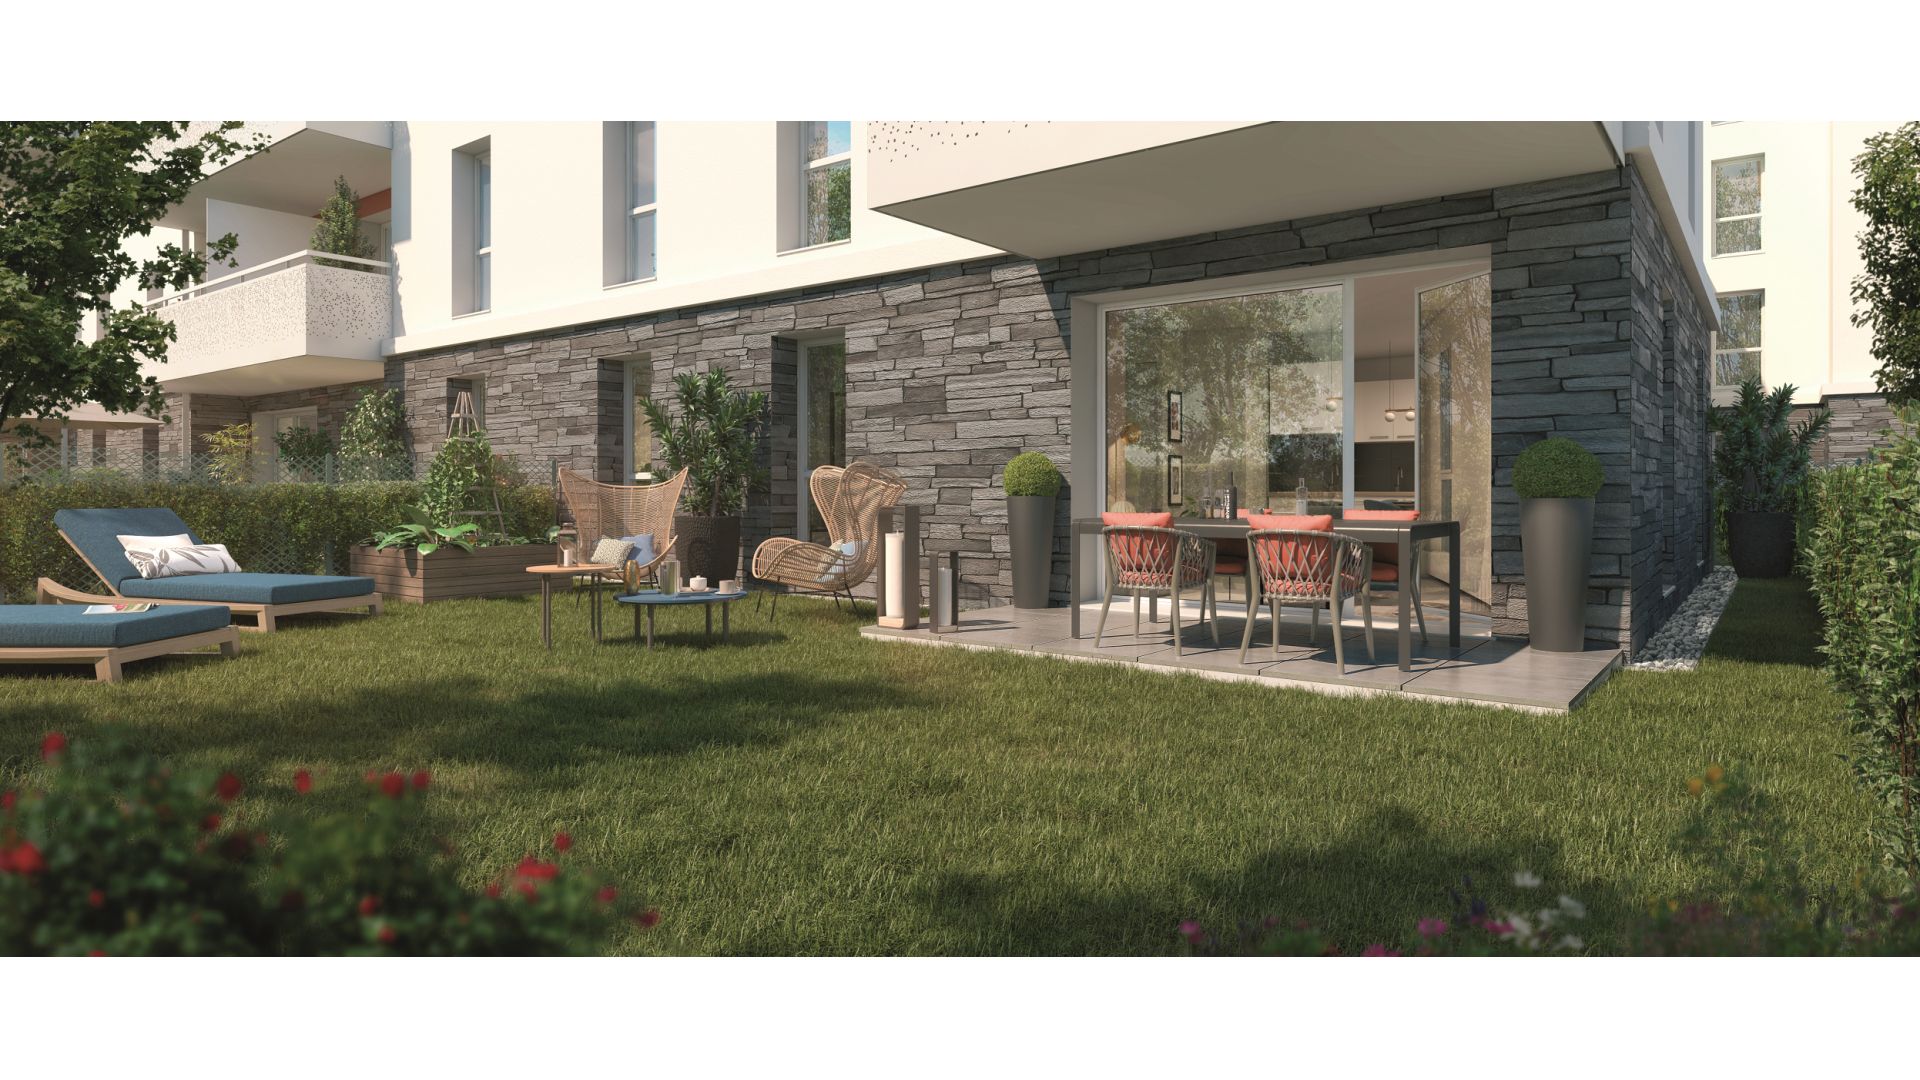 Greencity immobilier - achat appartements neufs du T2 au T3 - Résidence séniors - Les Villages d'Or Cessy - 01170 Cessy - vue terrasse